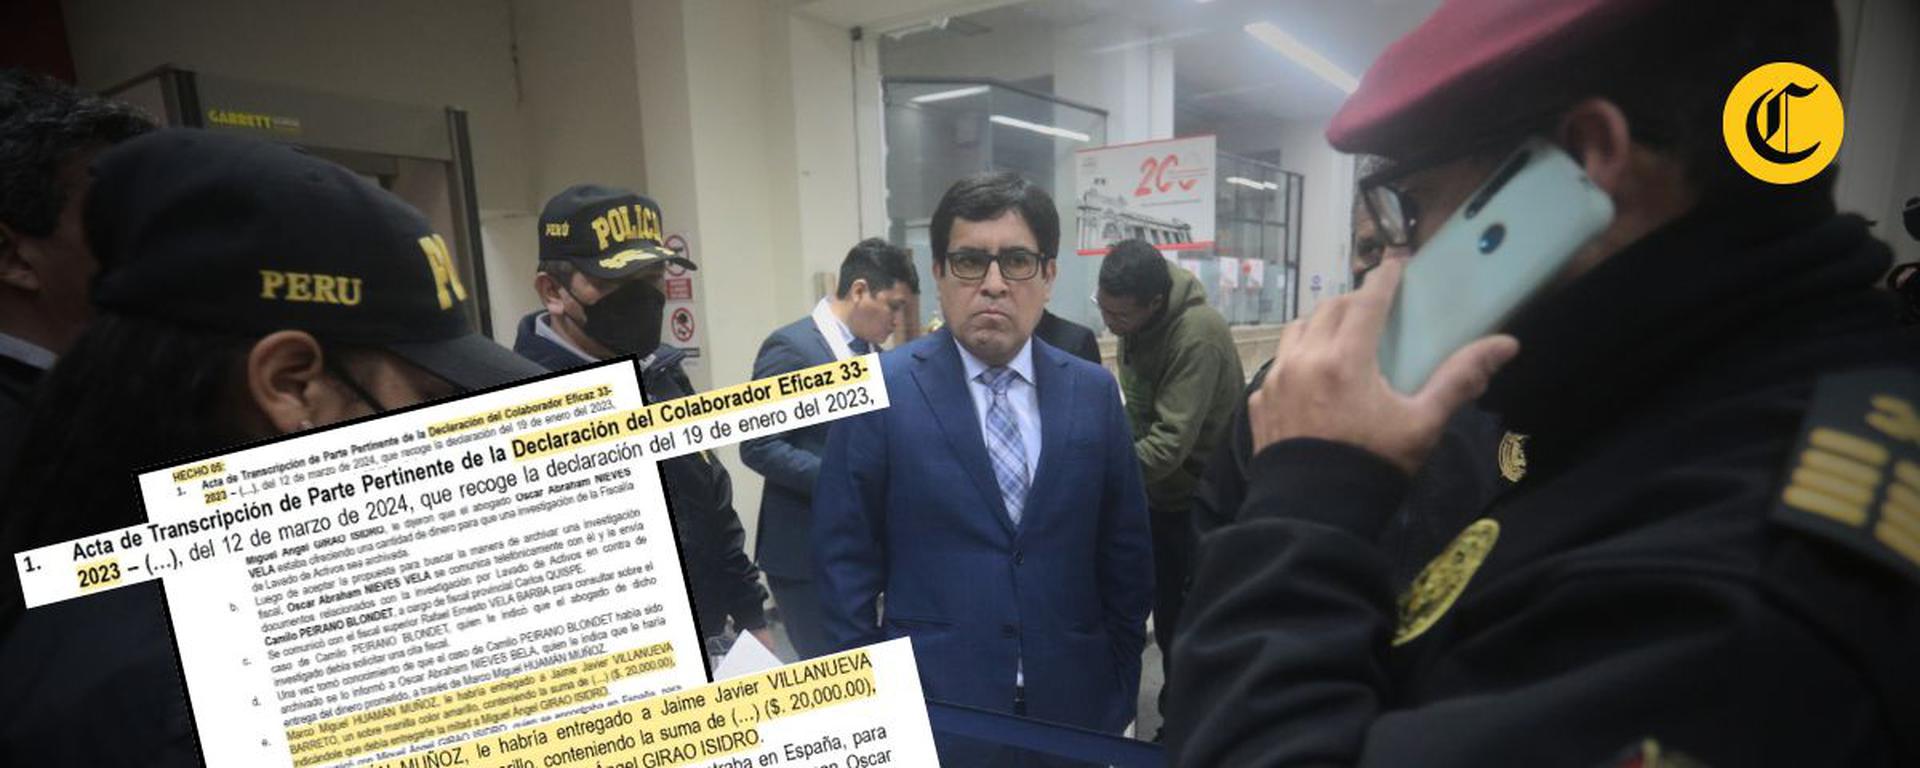 Caso Patricia Benavides: presunta red habría buscado “captar” a magistrados del TC, según colaborador